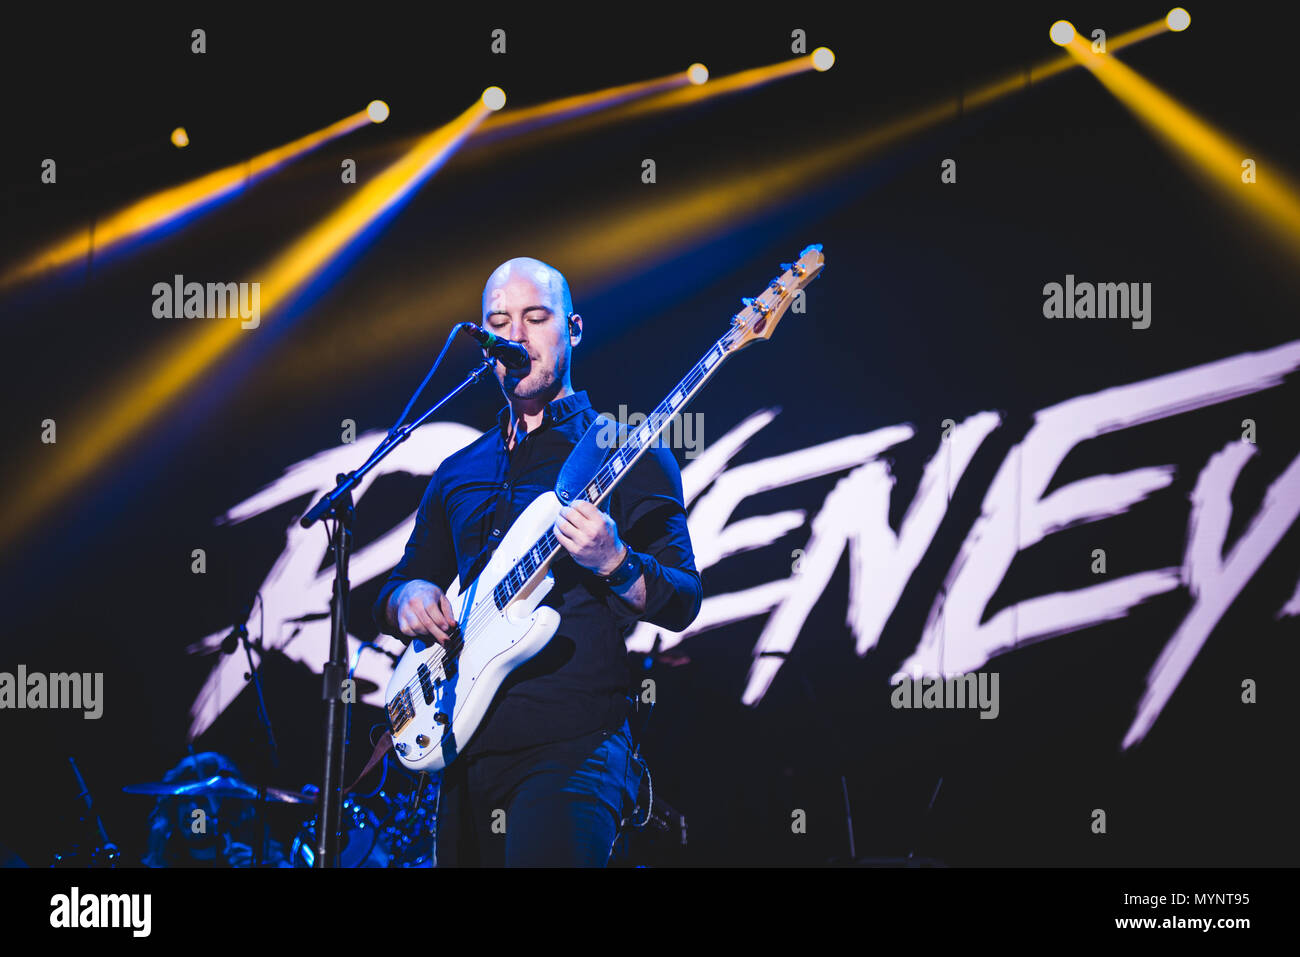 Italia: 2017 Febbraio 2nd: l'inglese rock band Raveneye mostrato performance dal vivo sul palco della Pala Alpitour, apertura per il bacio' World Tour 2017 Foto Stock